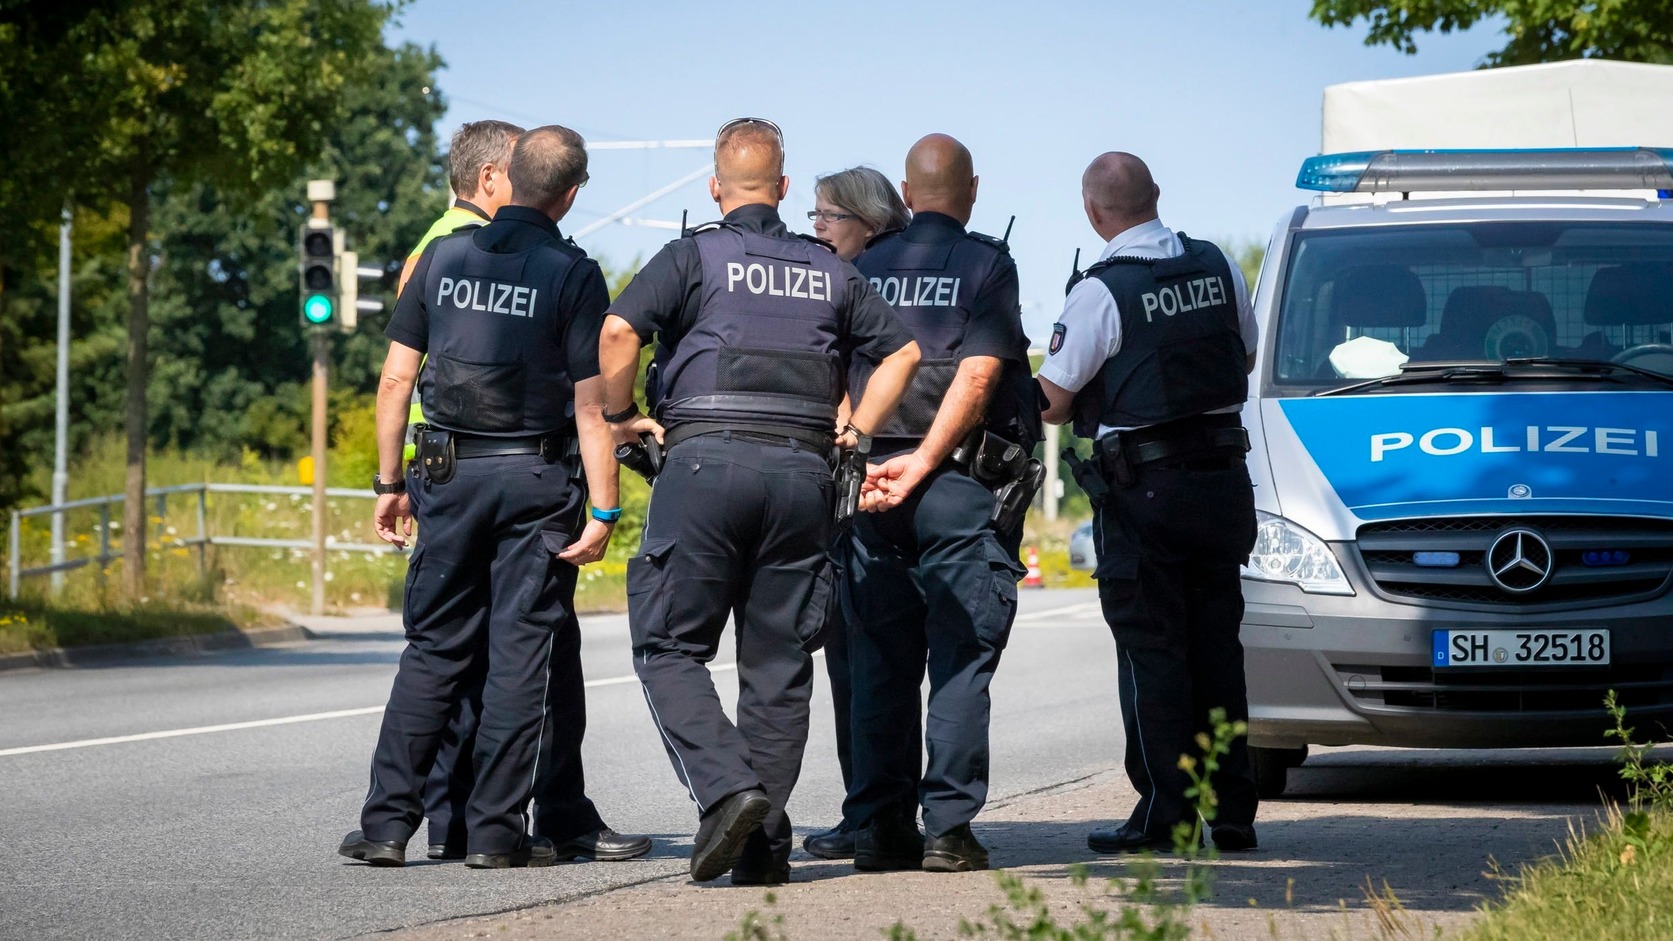 Sajtóértesülés: Egy német férfi a hallei lövöldözés elkövetője